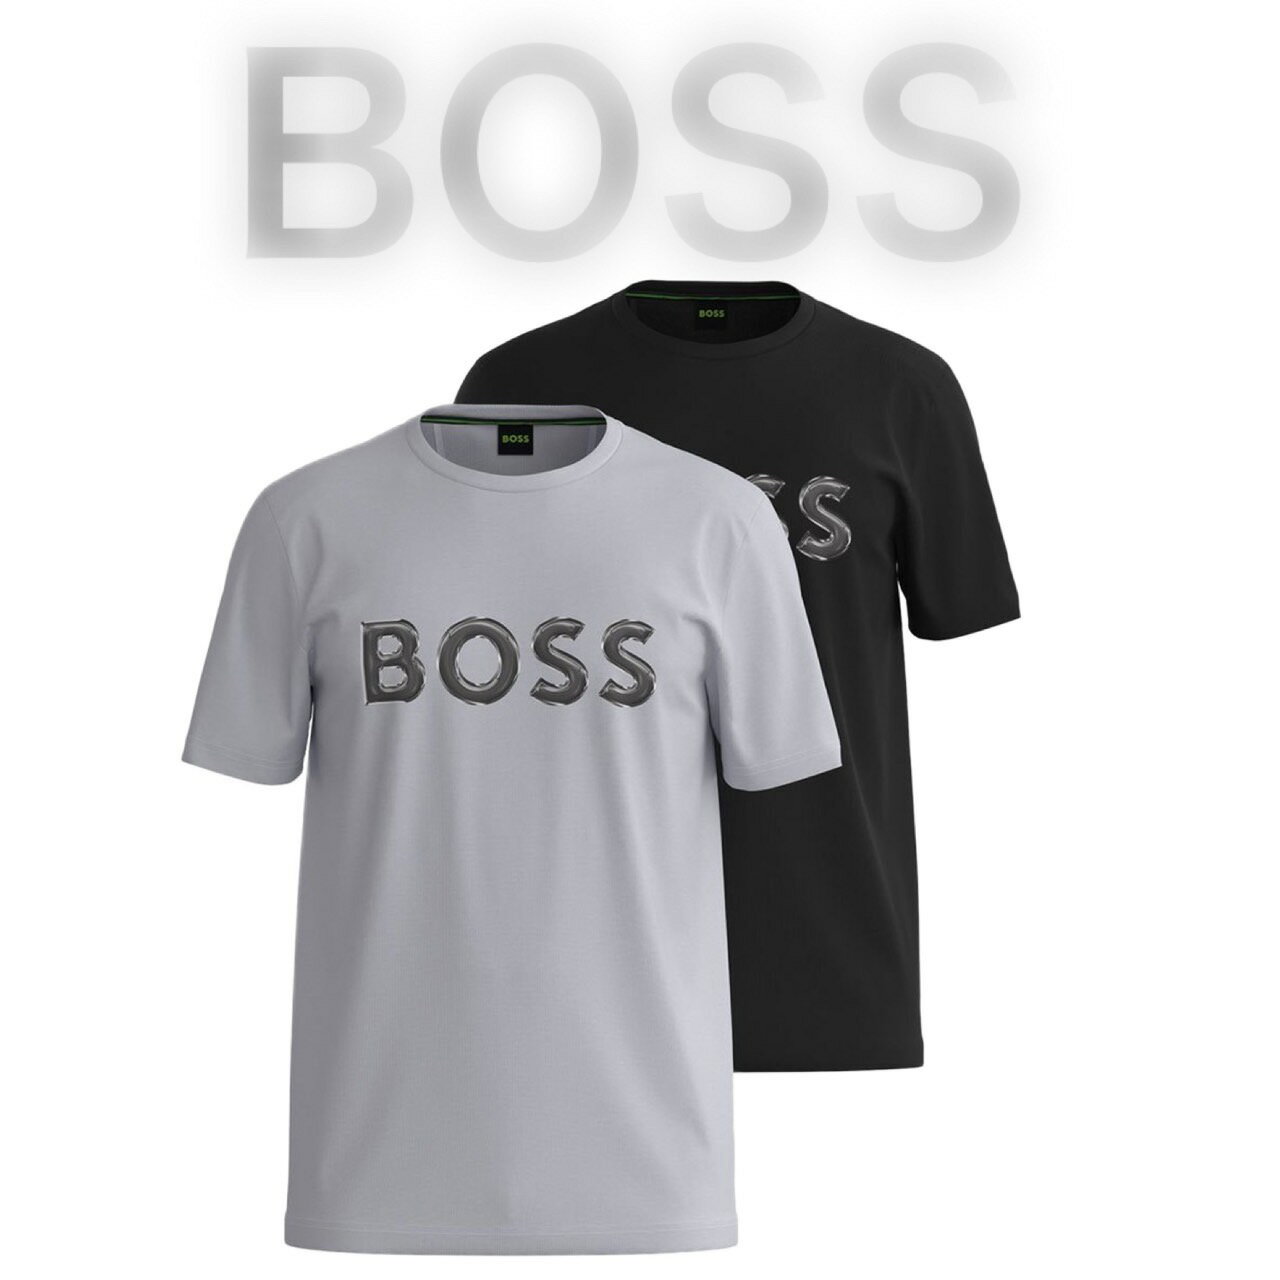 HUGO BOSS ヒューゴボス Tシャツ 10194355